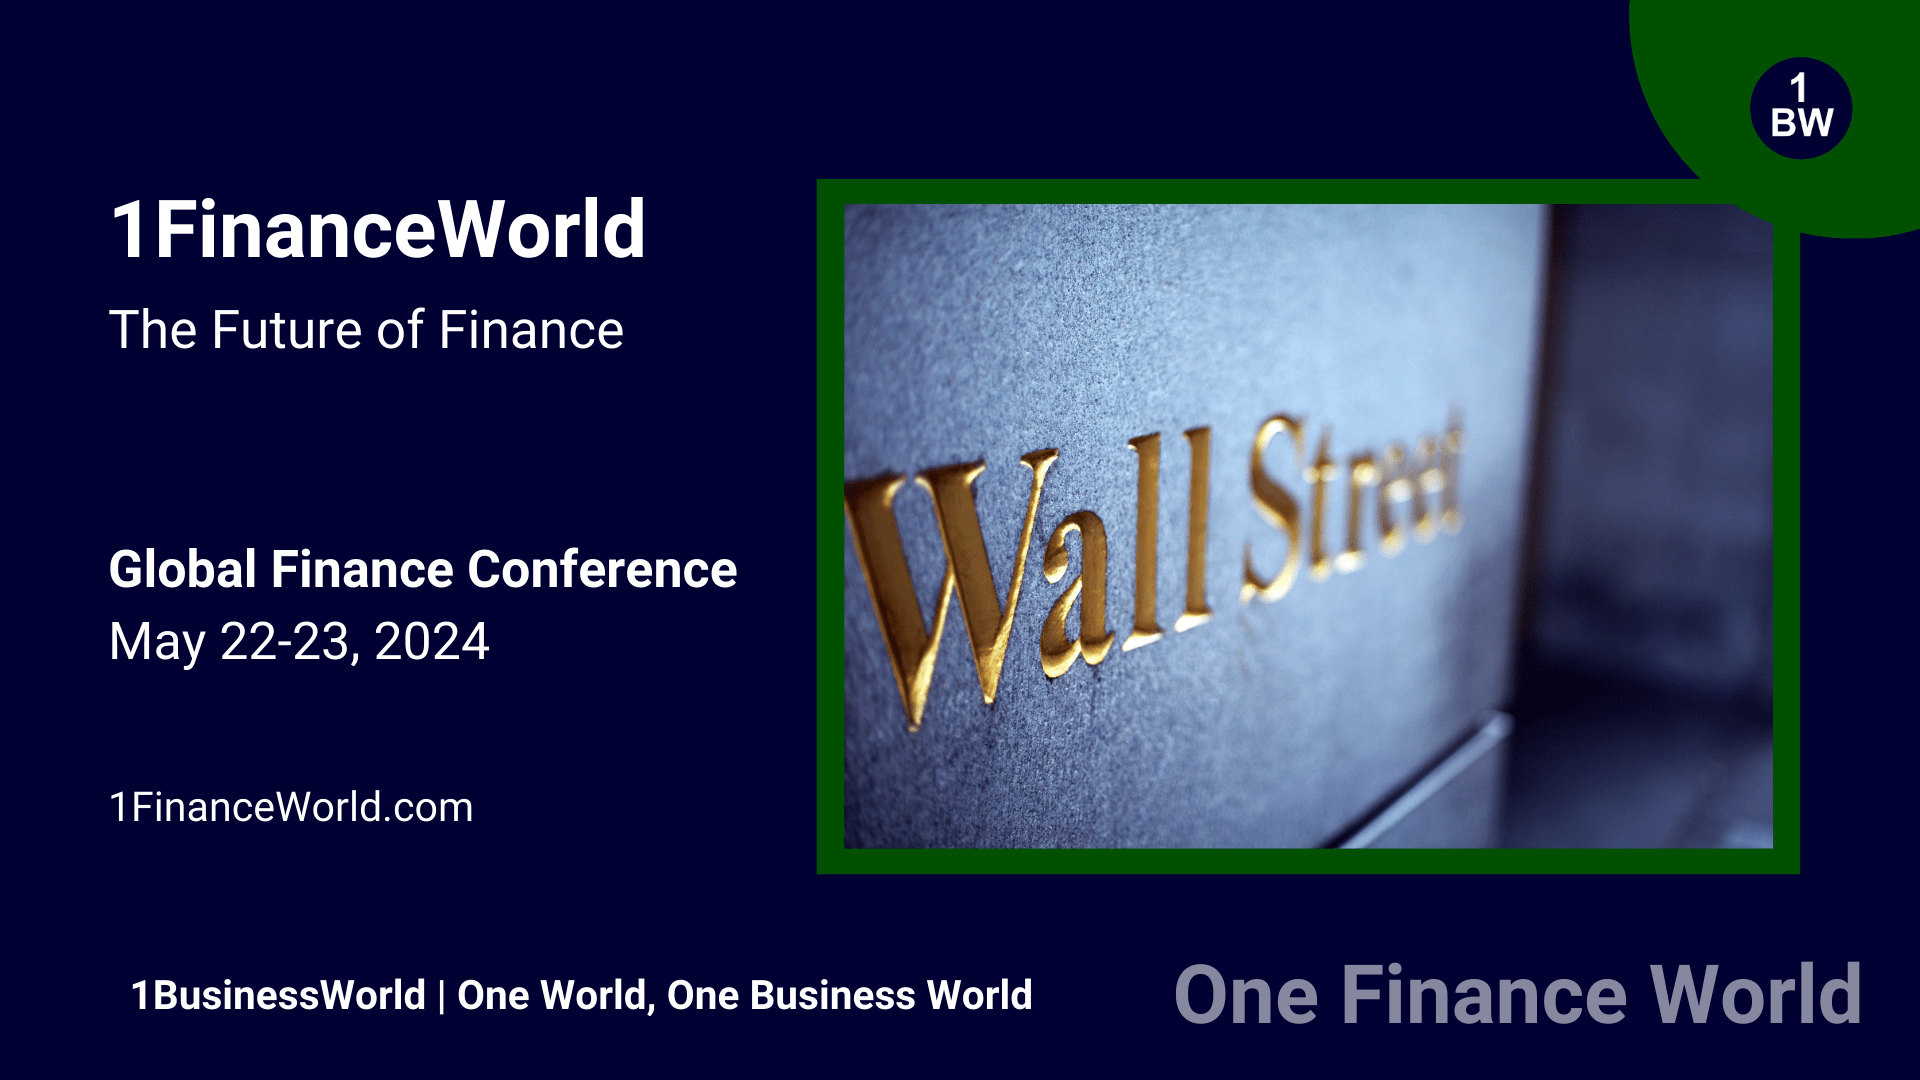 1FinanceWorld